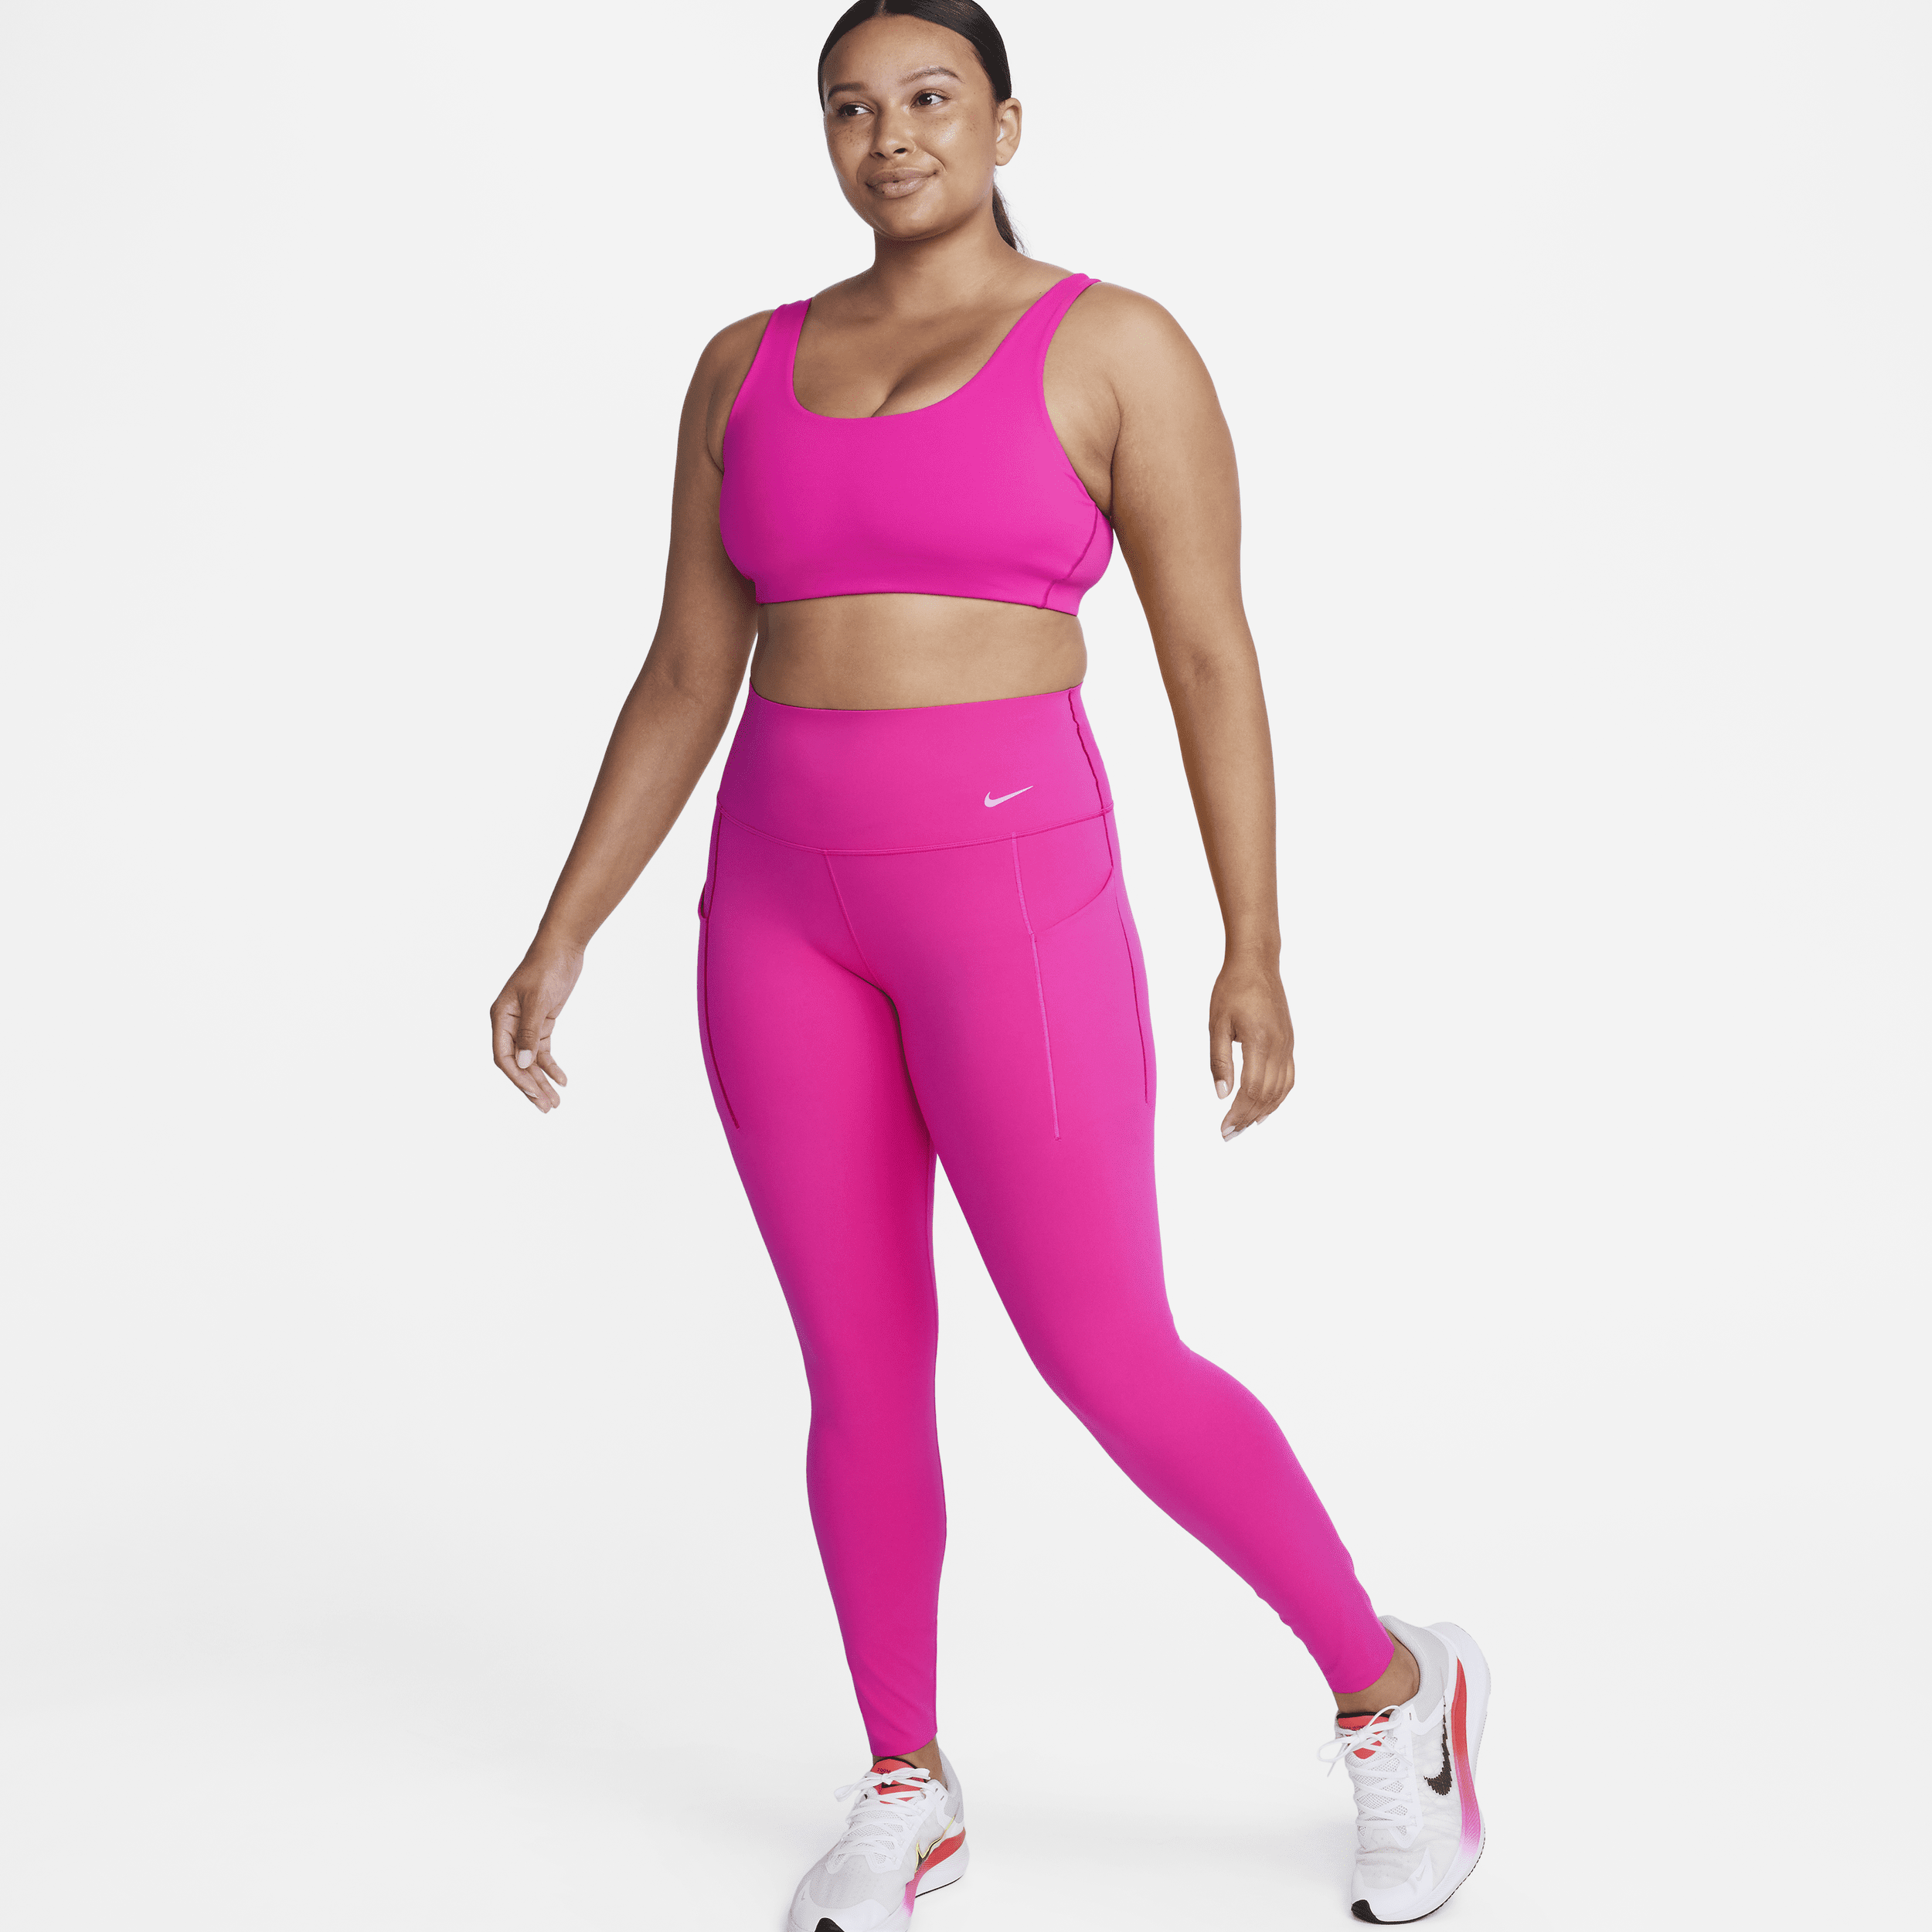 Nike Universa-leggings i fuld længde med medium støtte, høj talje og lommer til kvinder - Pink